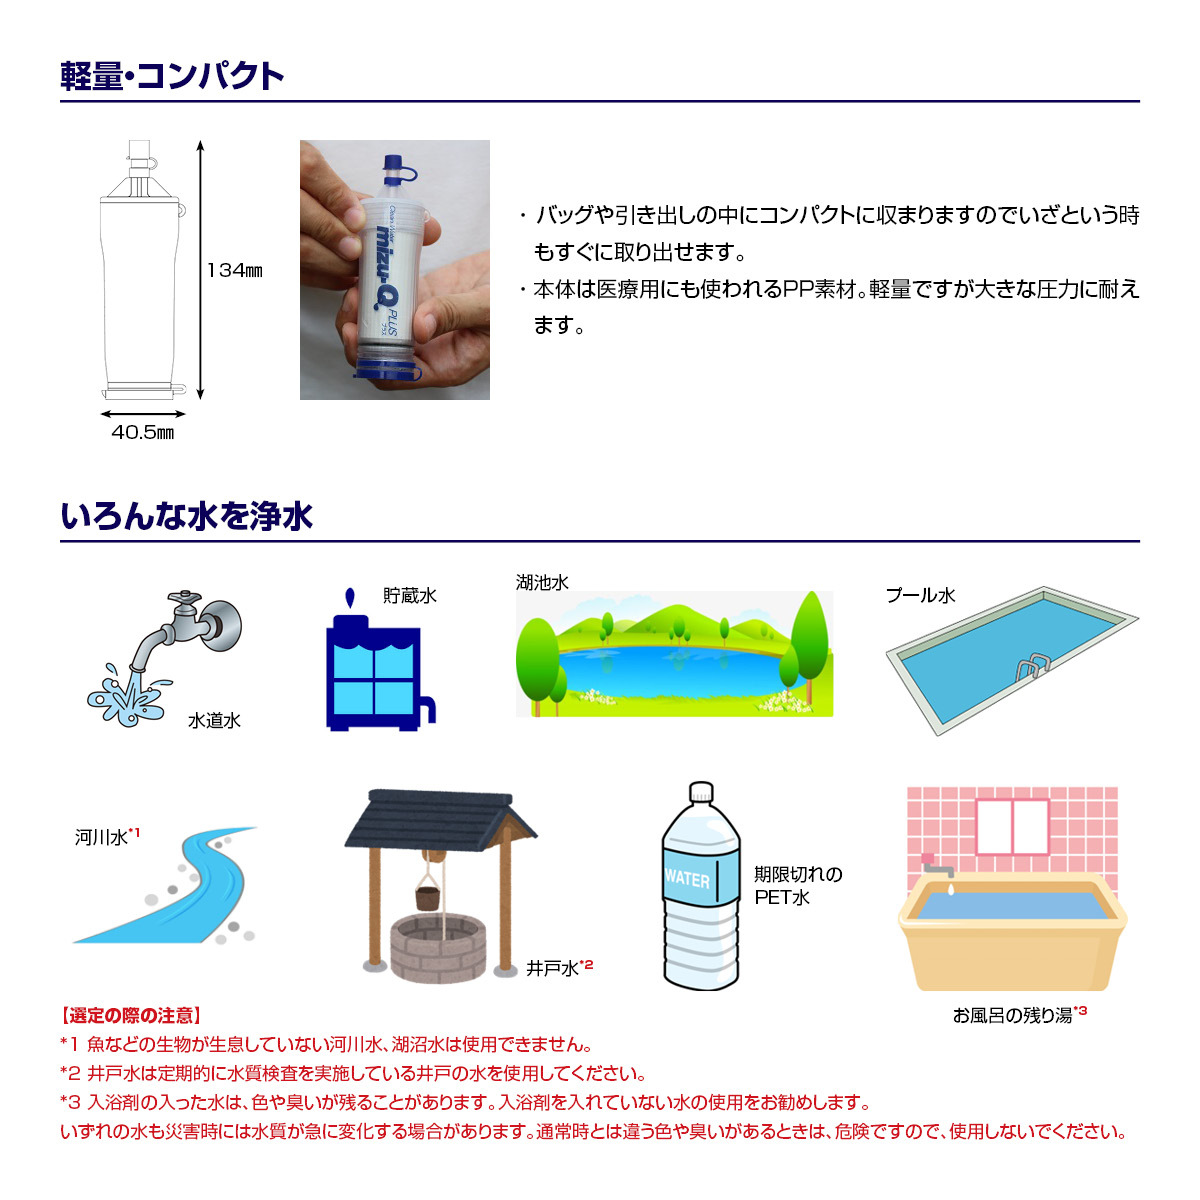 ミズキュープラス 携帯型浄水器 mizu-Q PLUS かりはな製作所 ▽ 防災